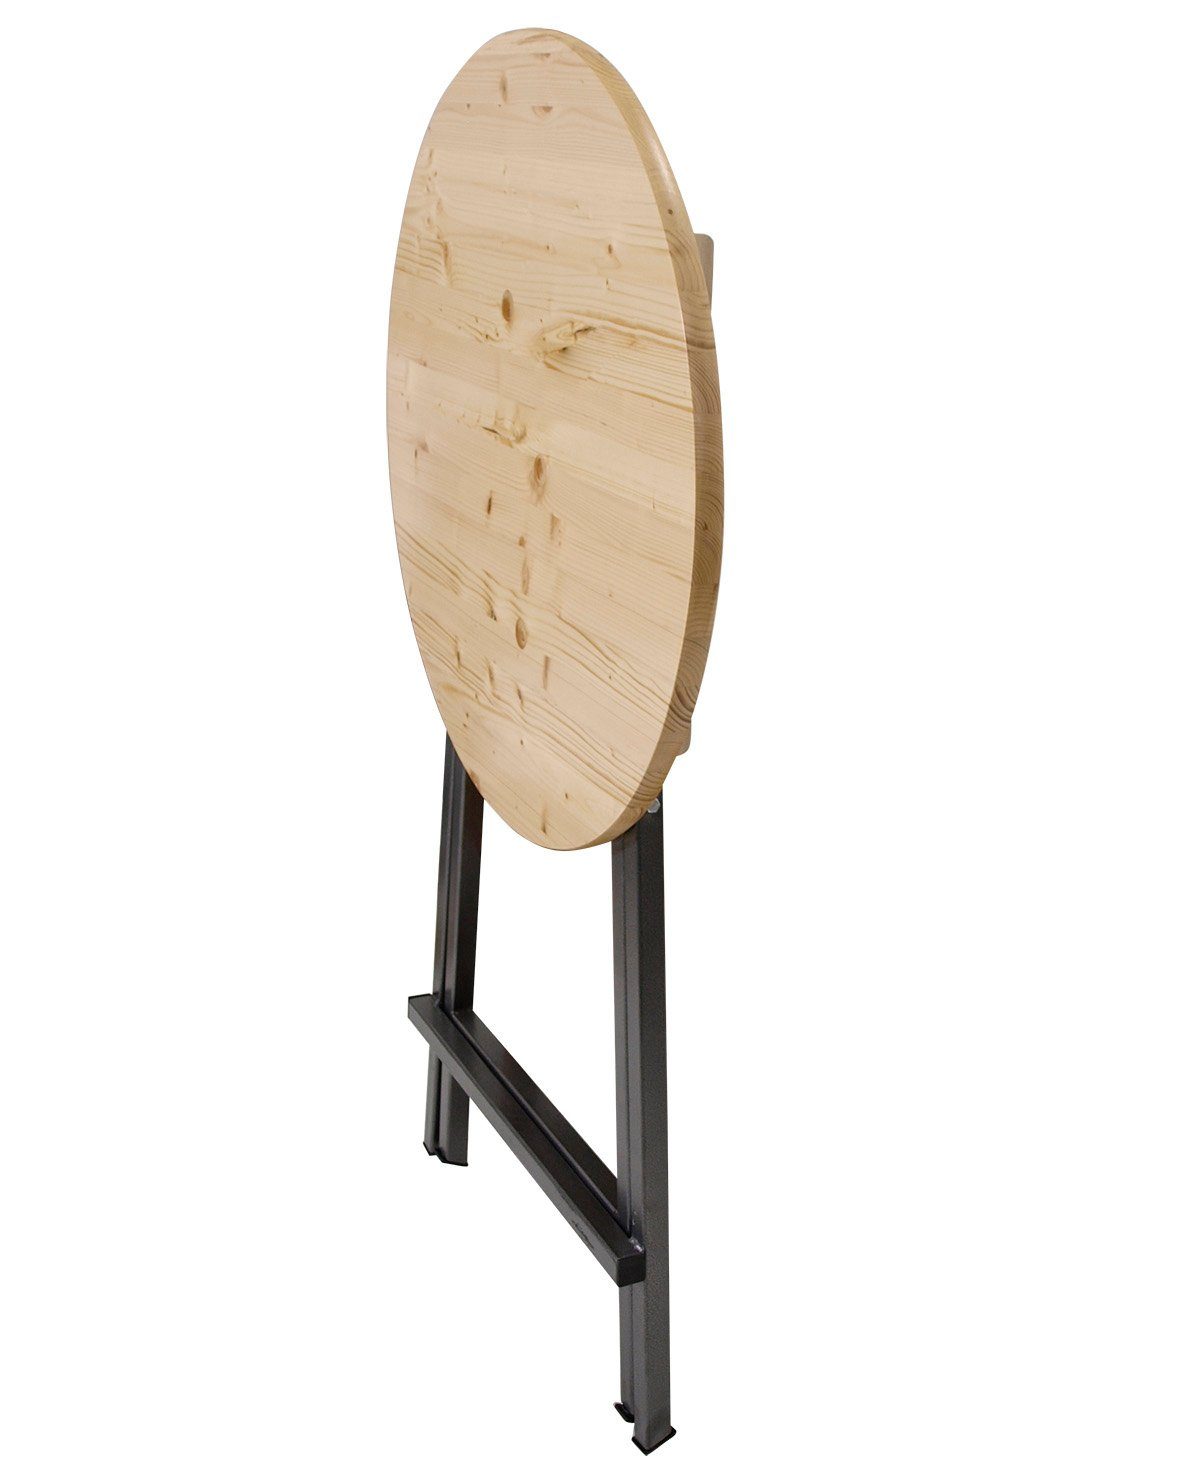 (1-St), DEGAMO Stahl Gestell rund Tischplatte 78cm, Stehtisch ZÜRICH klappbar, Kiefer